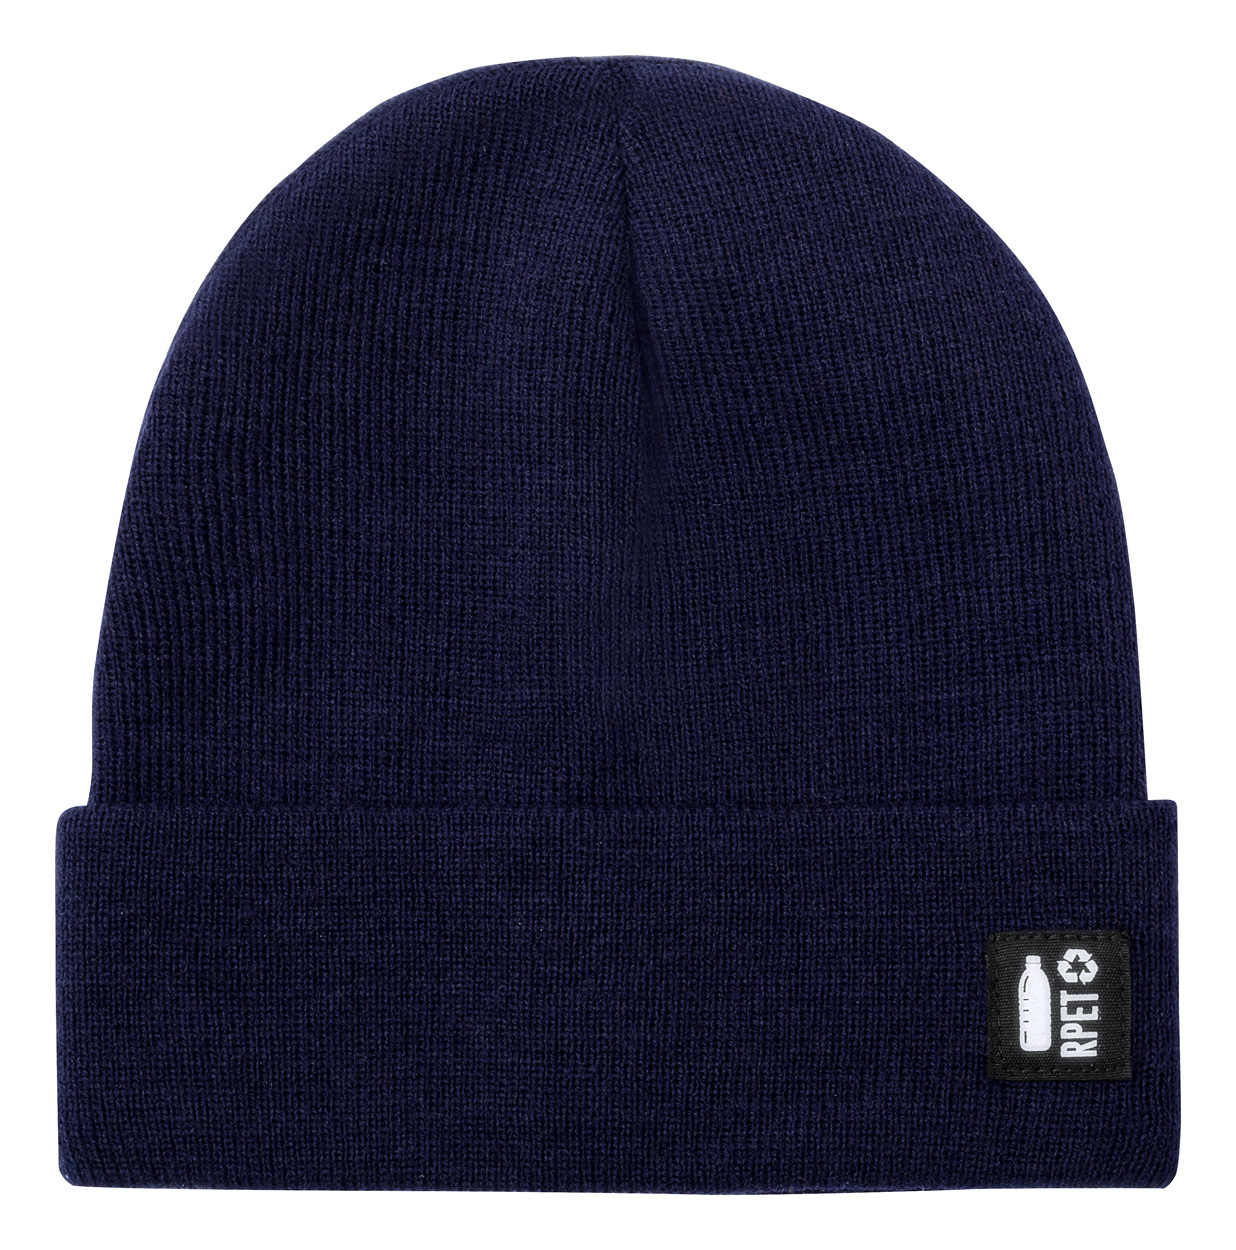 Hetul RPET winter hat - blue